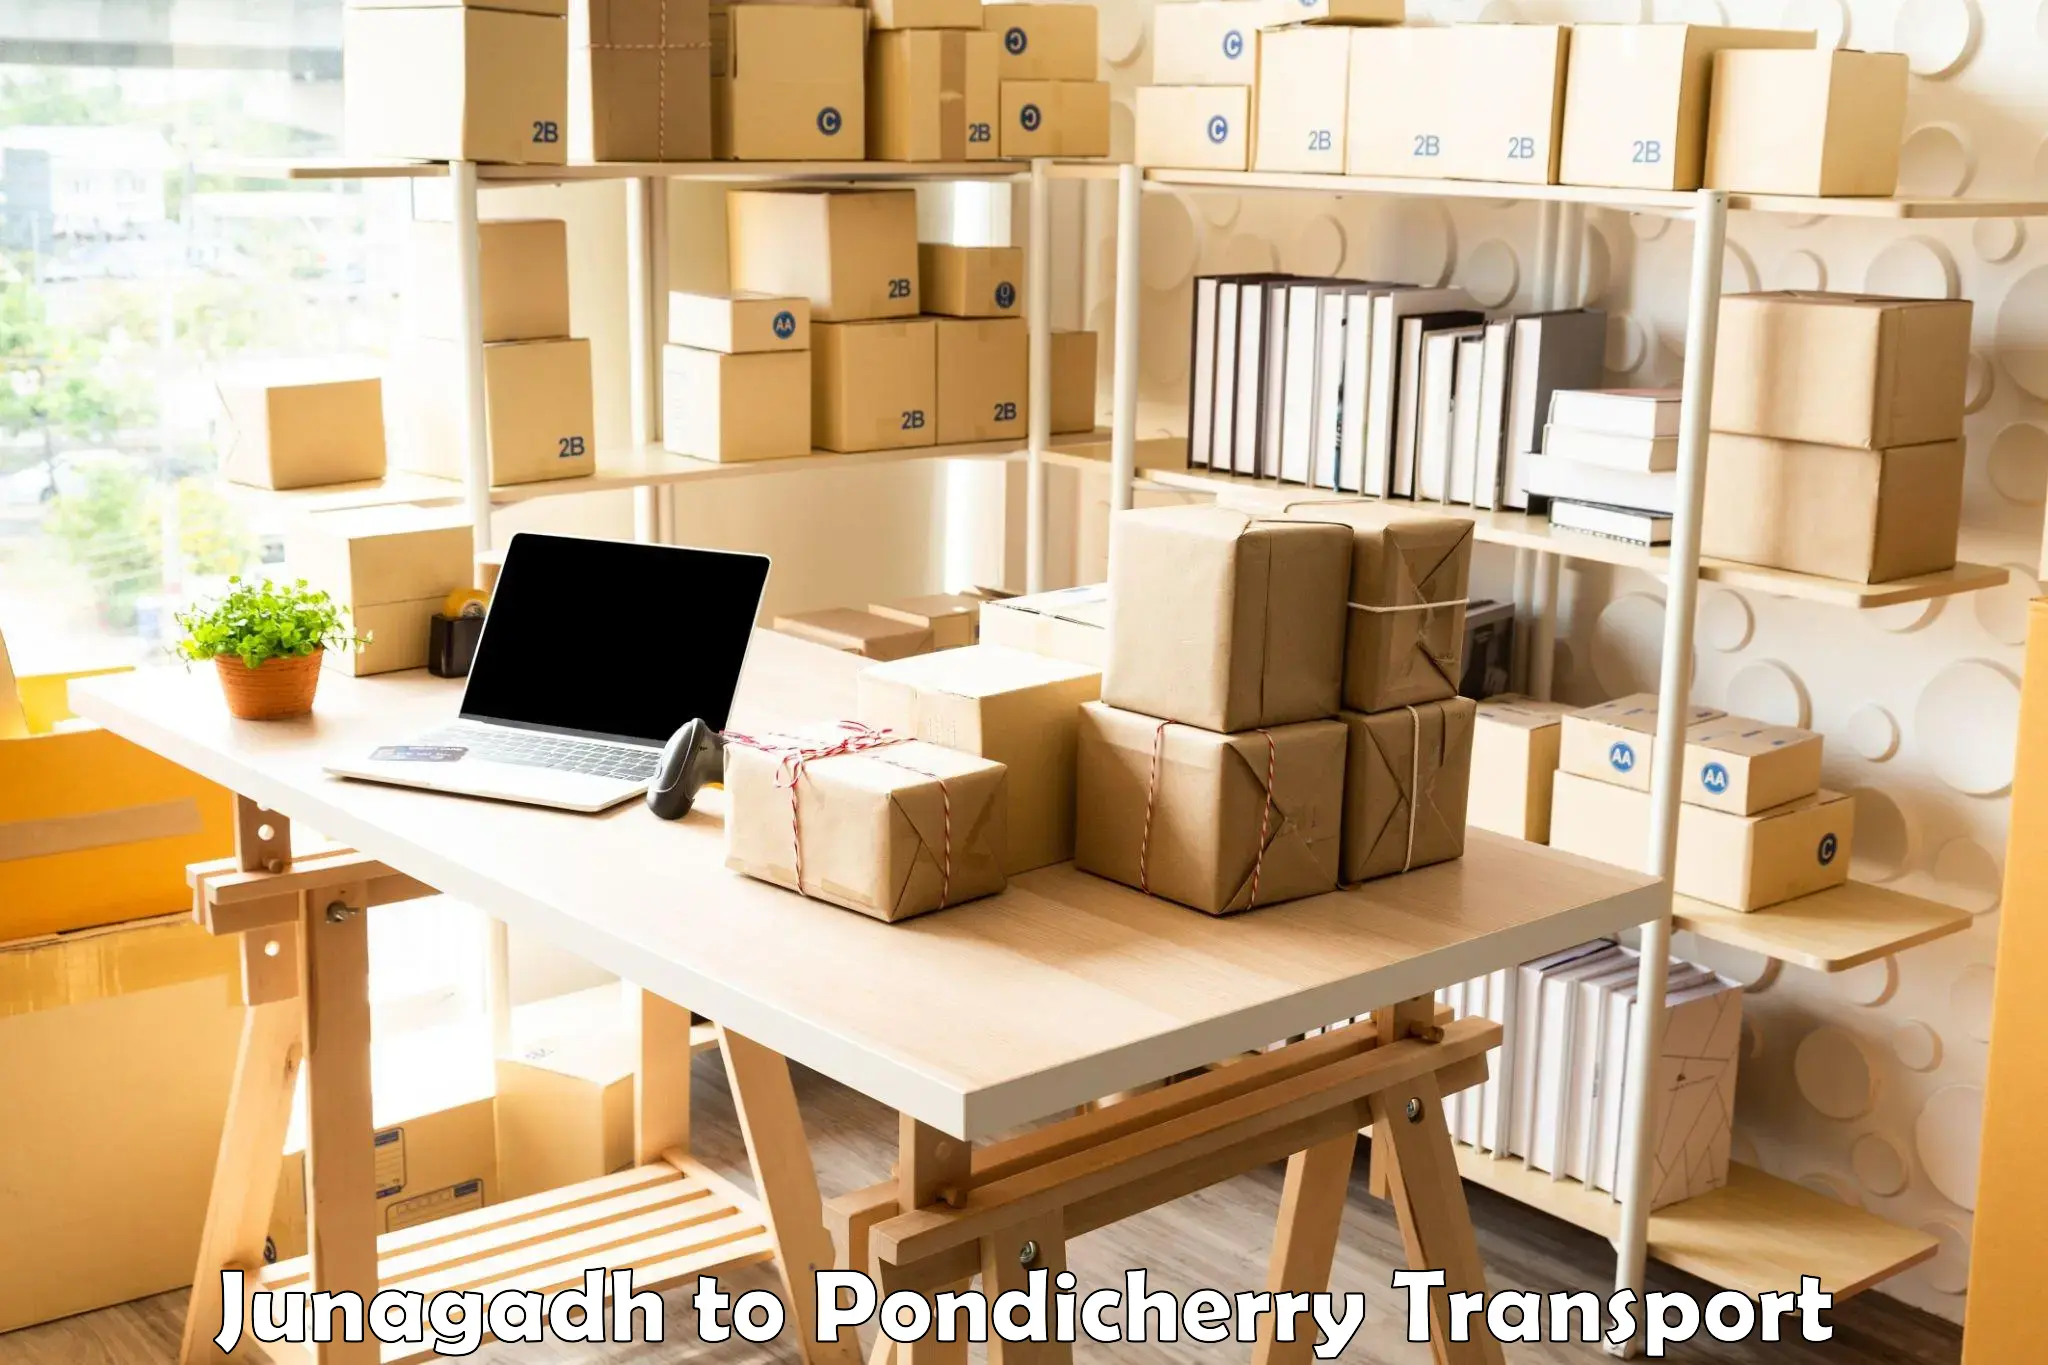 Luggage transport services Junagadh to Pondicherry